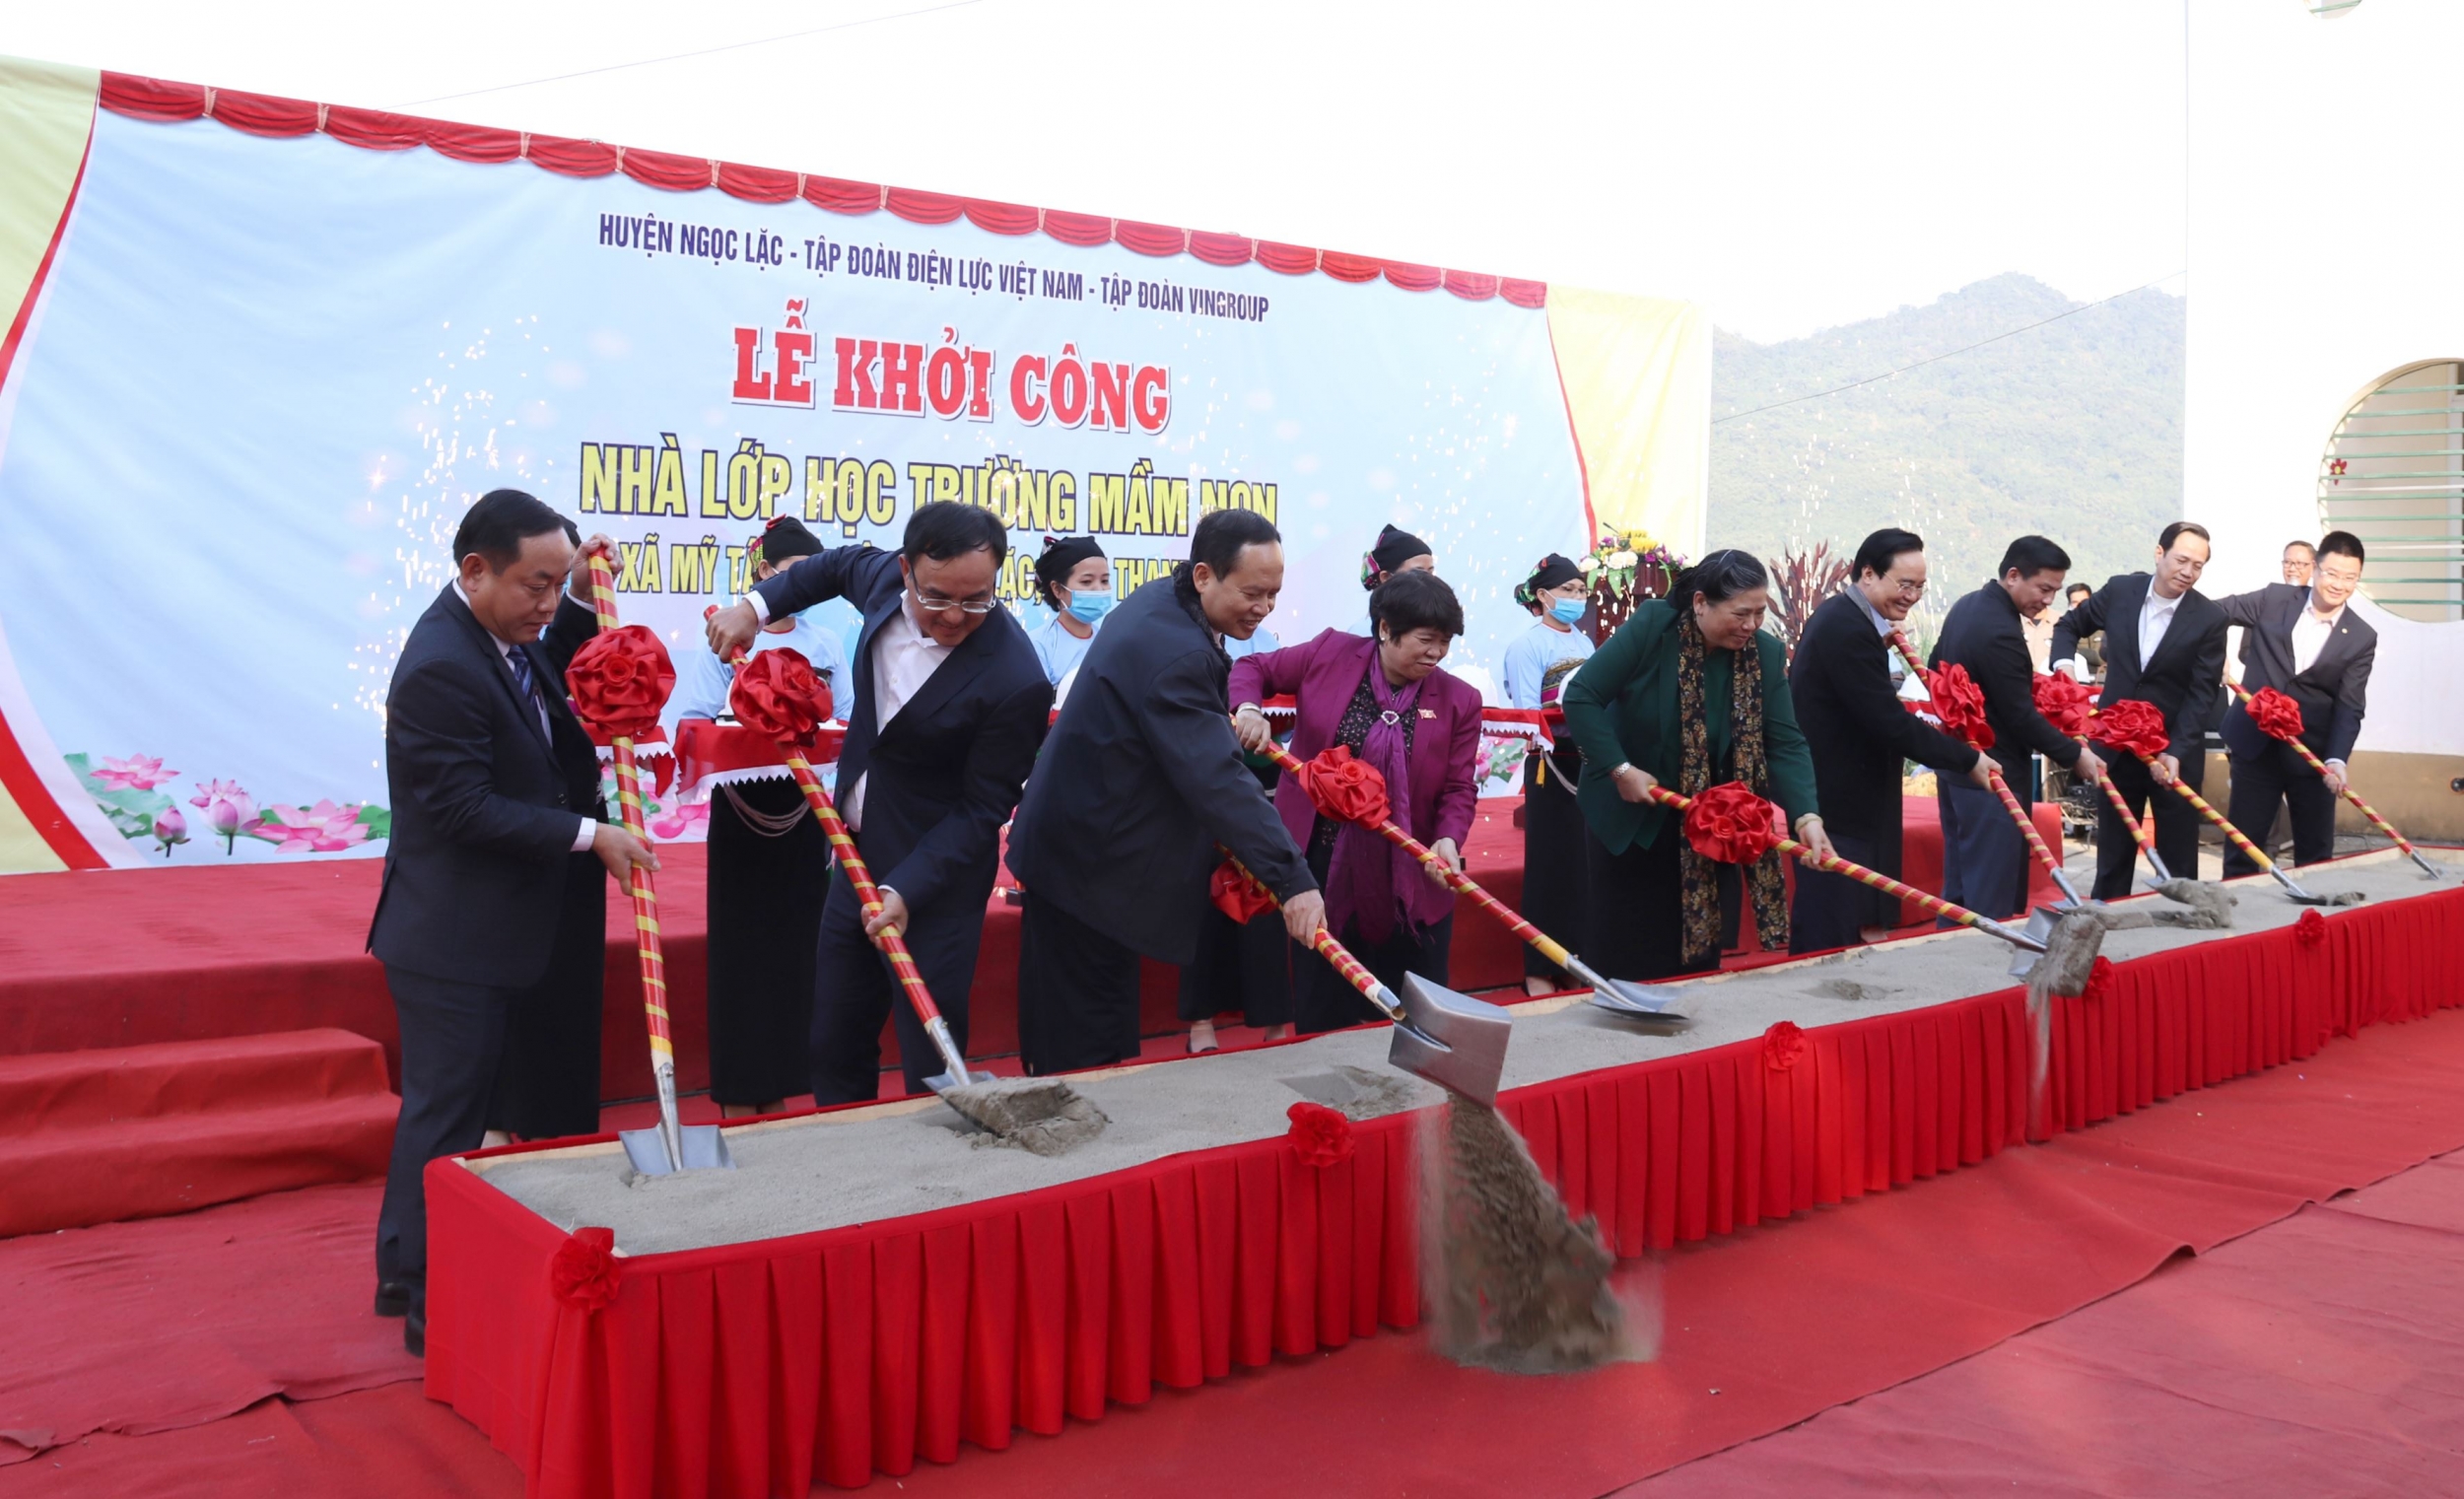 EVN tài trợ chính xây dựng công trình nhà lớp học Trường Mầm non xã Mỹ Tân (Thanh Hóa)